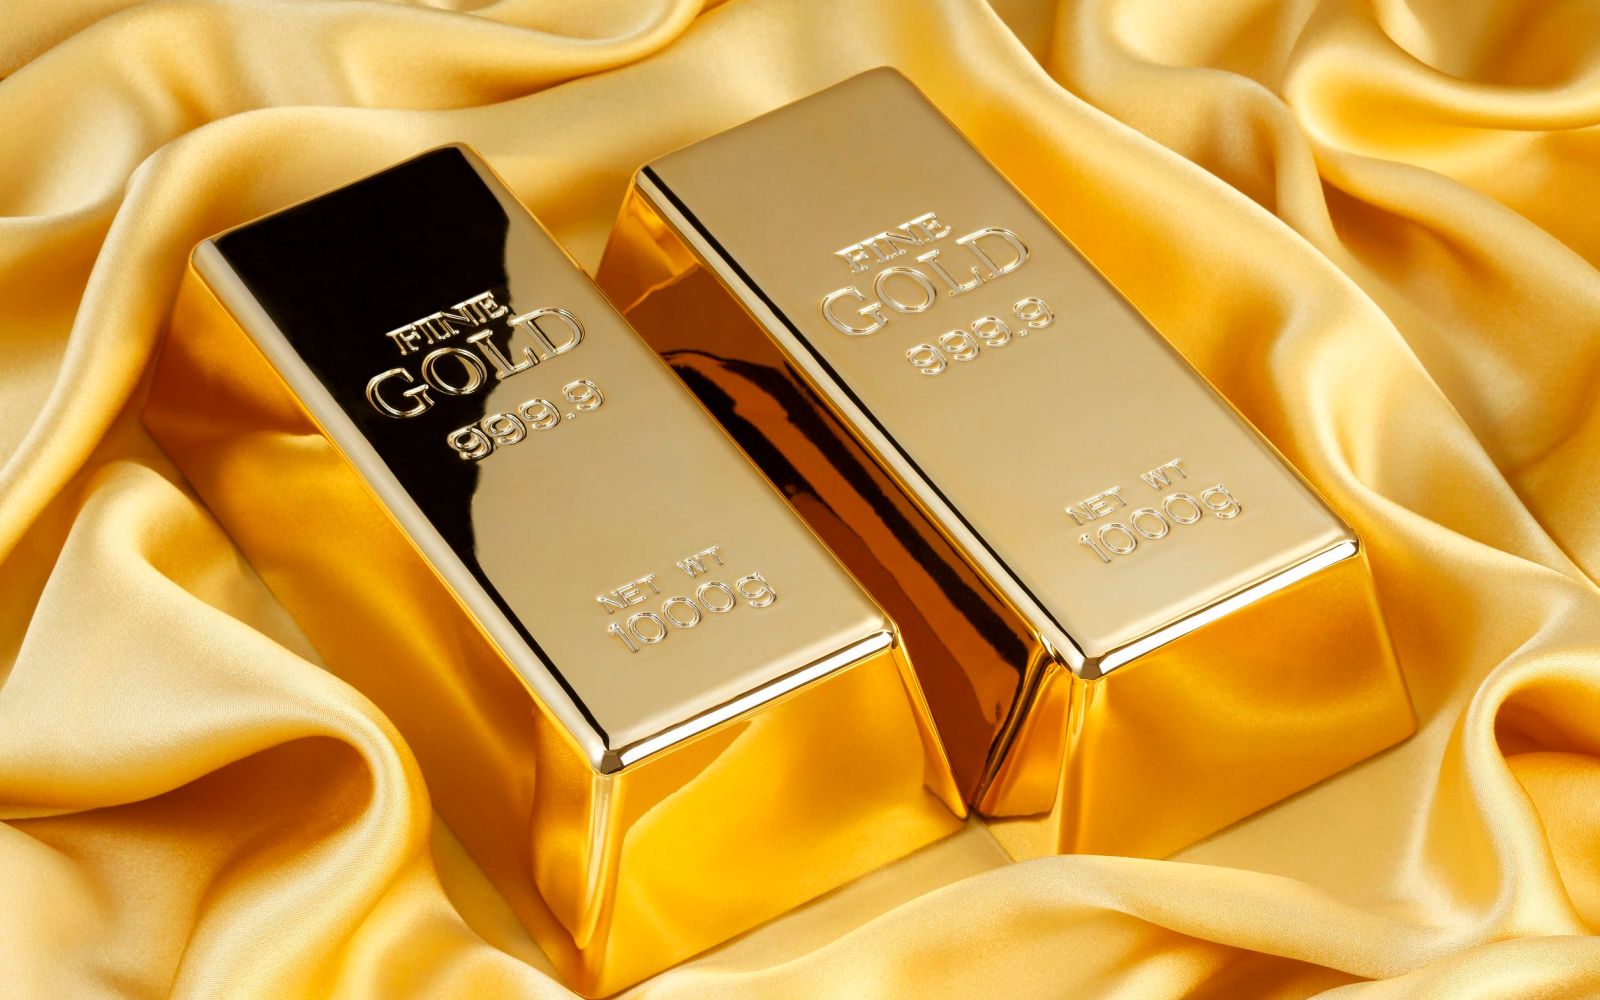  ارتفاع جنوني في سعر الذهب اليوم الثلاثاء 28 مارس